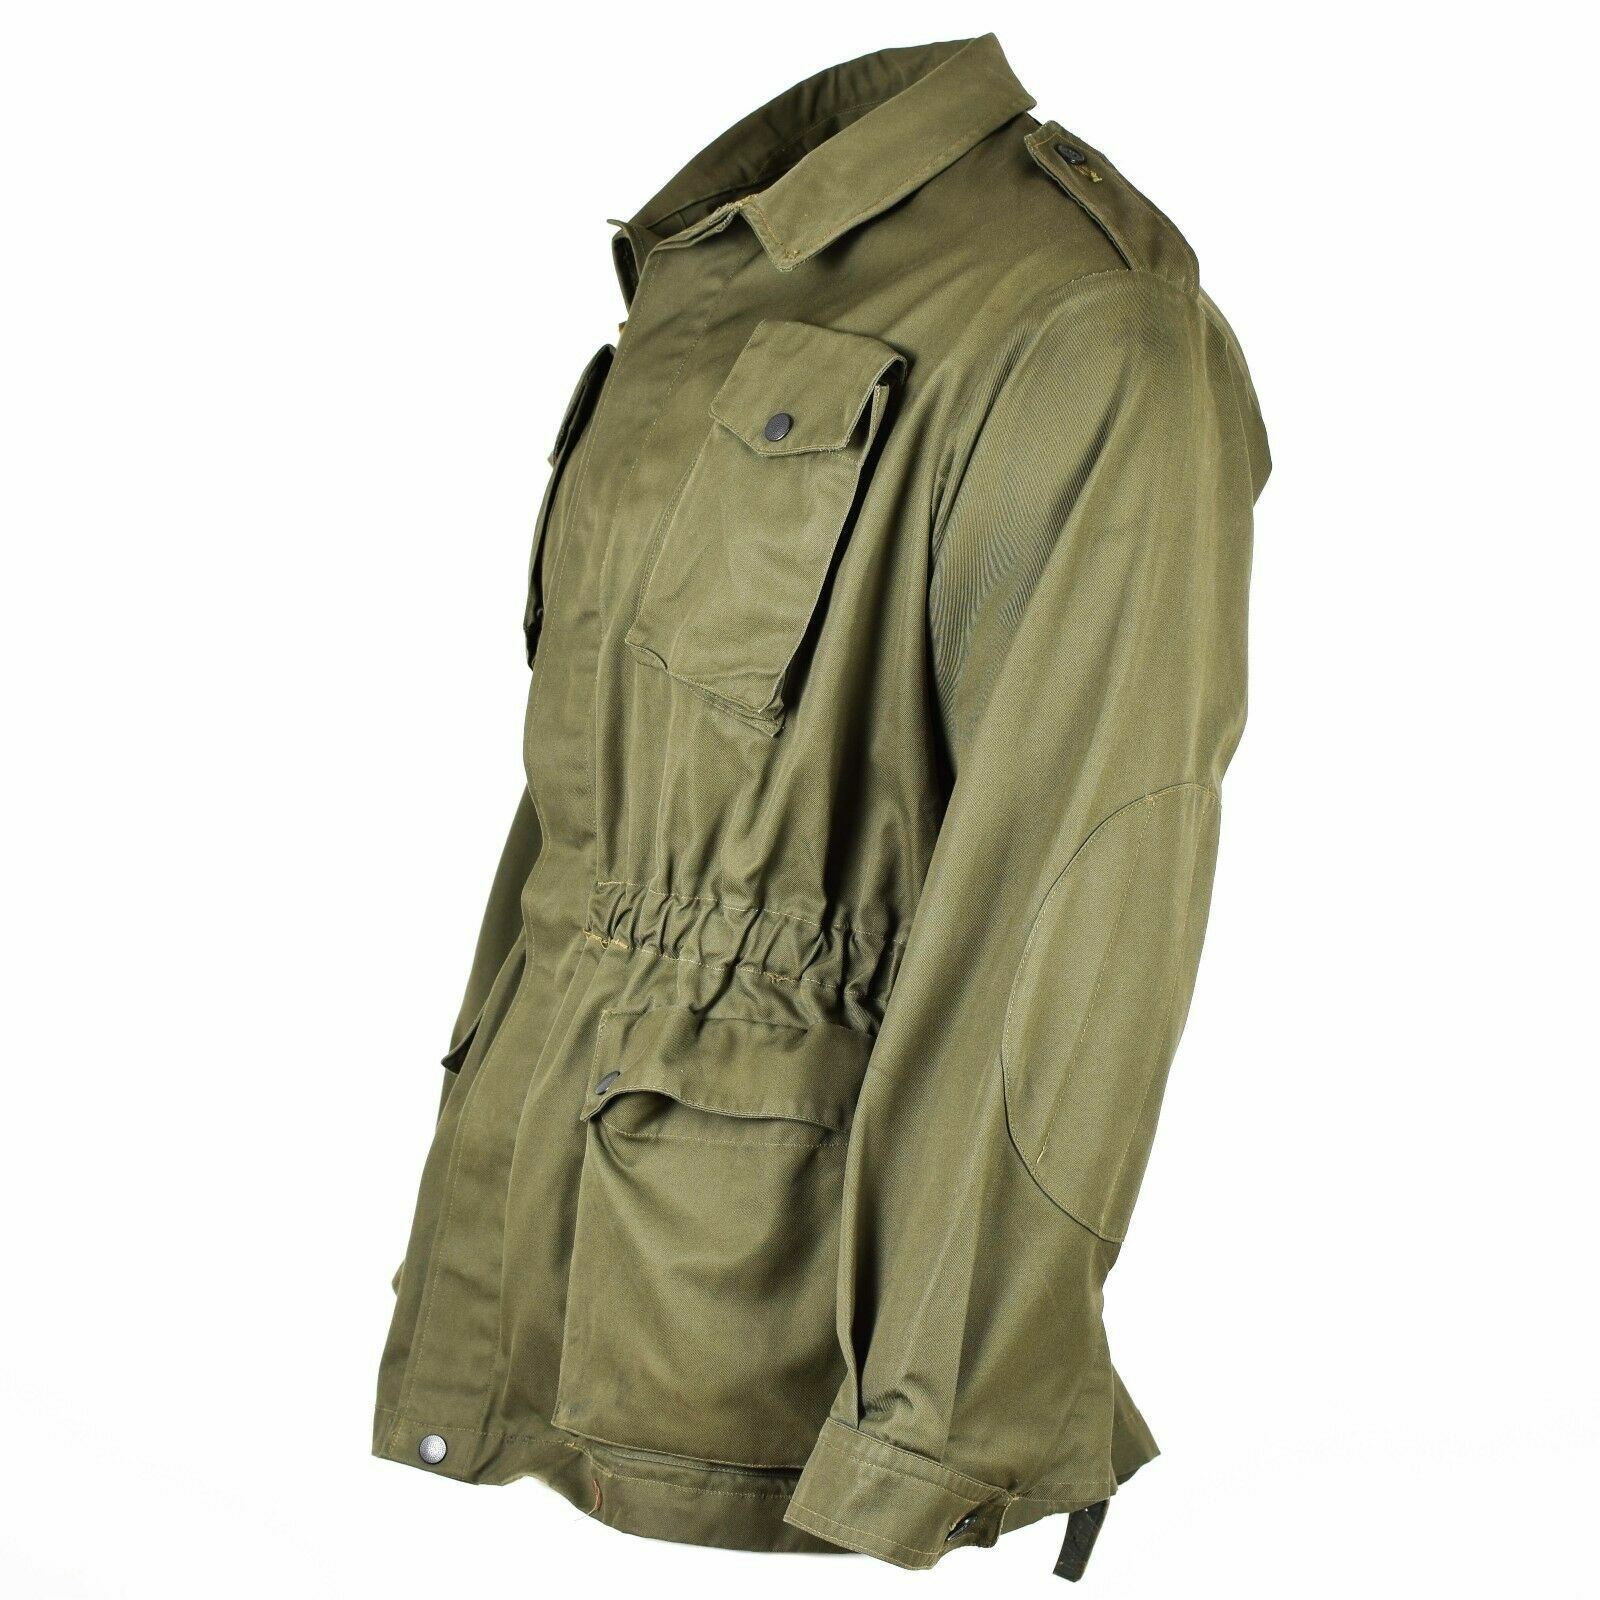 Vintage Italian Military BDU Jacket, Unused